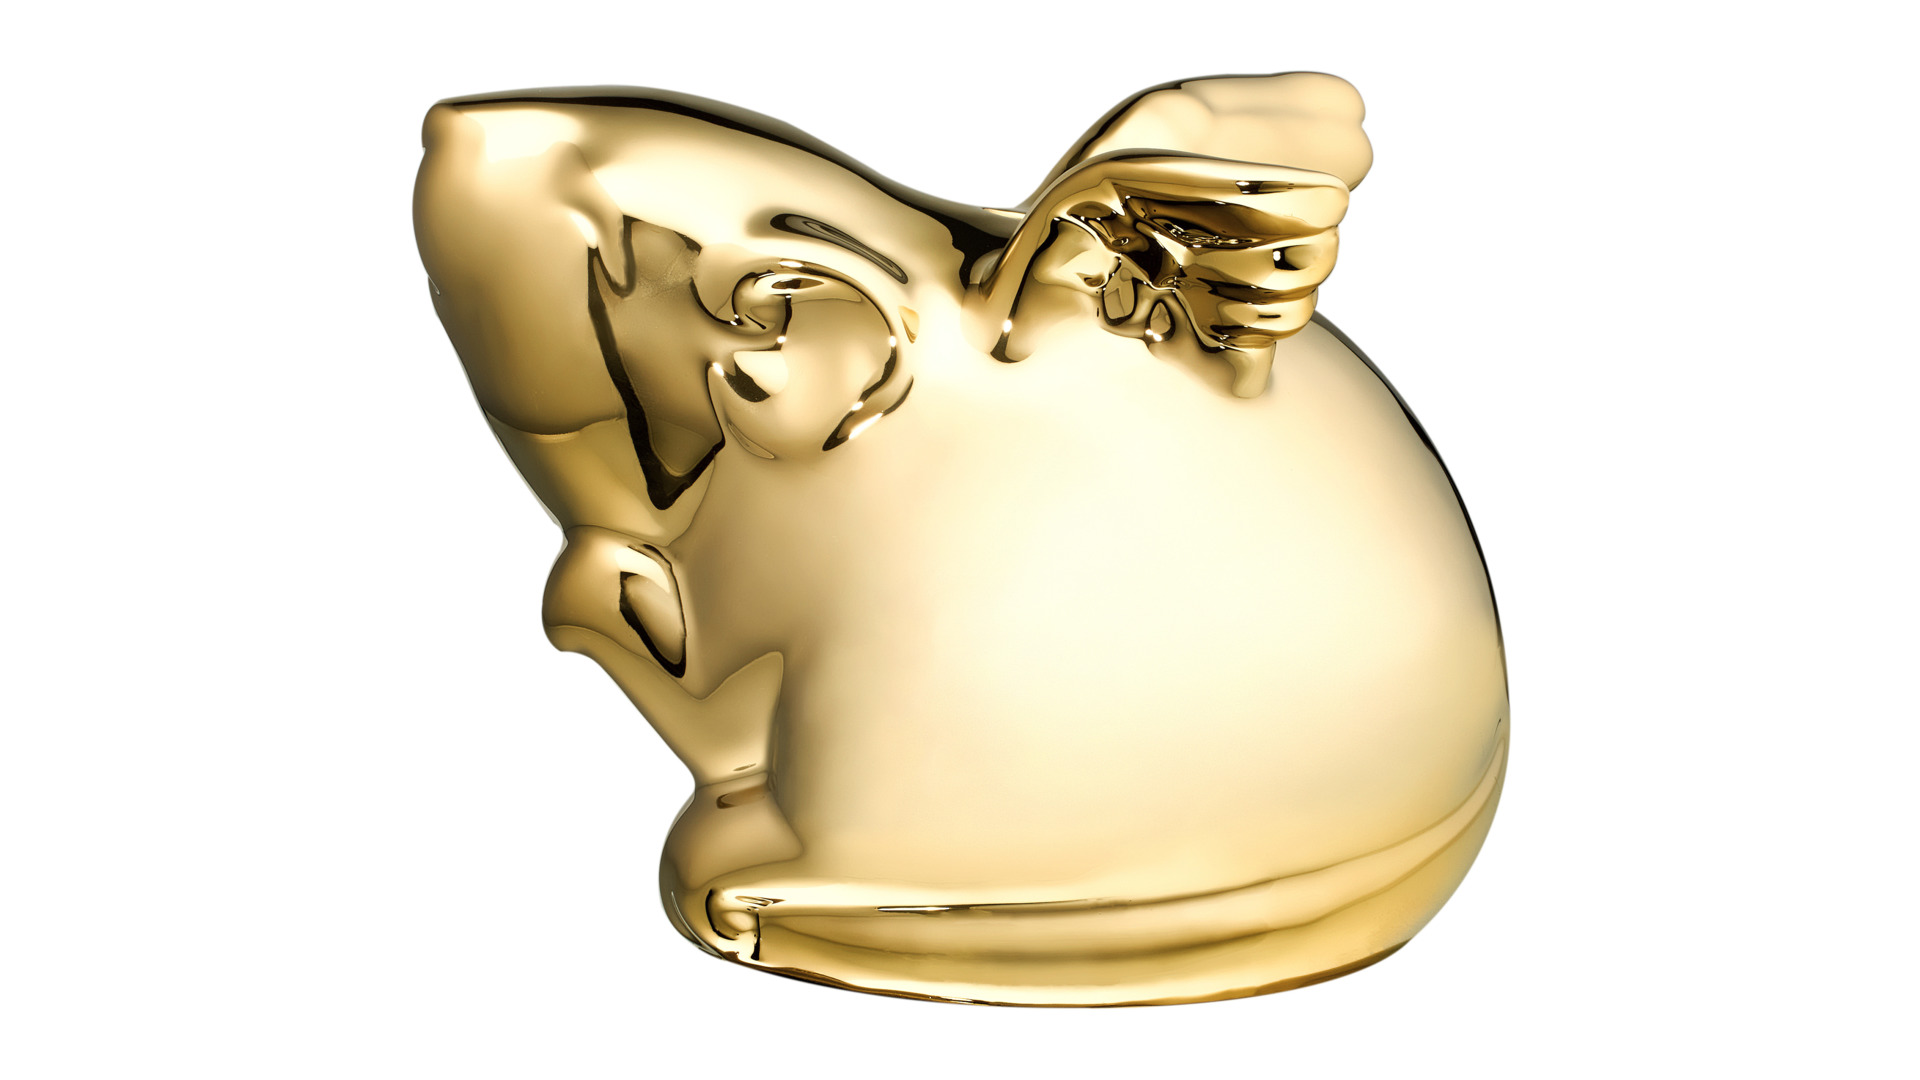 Копилка My Ceramic Story Мышка золотая с крыльями 17 см, керамика